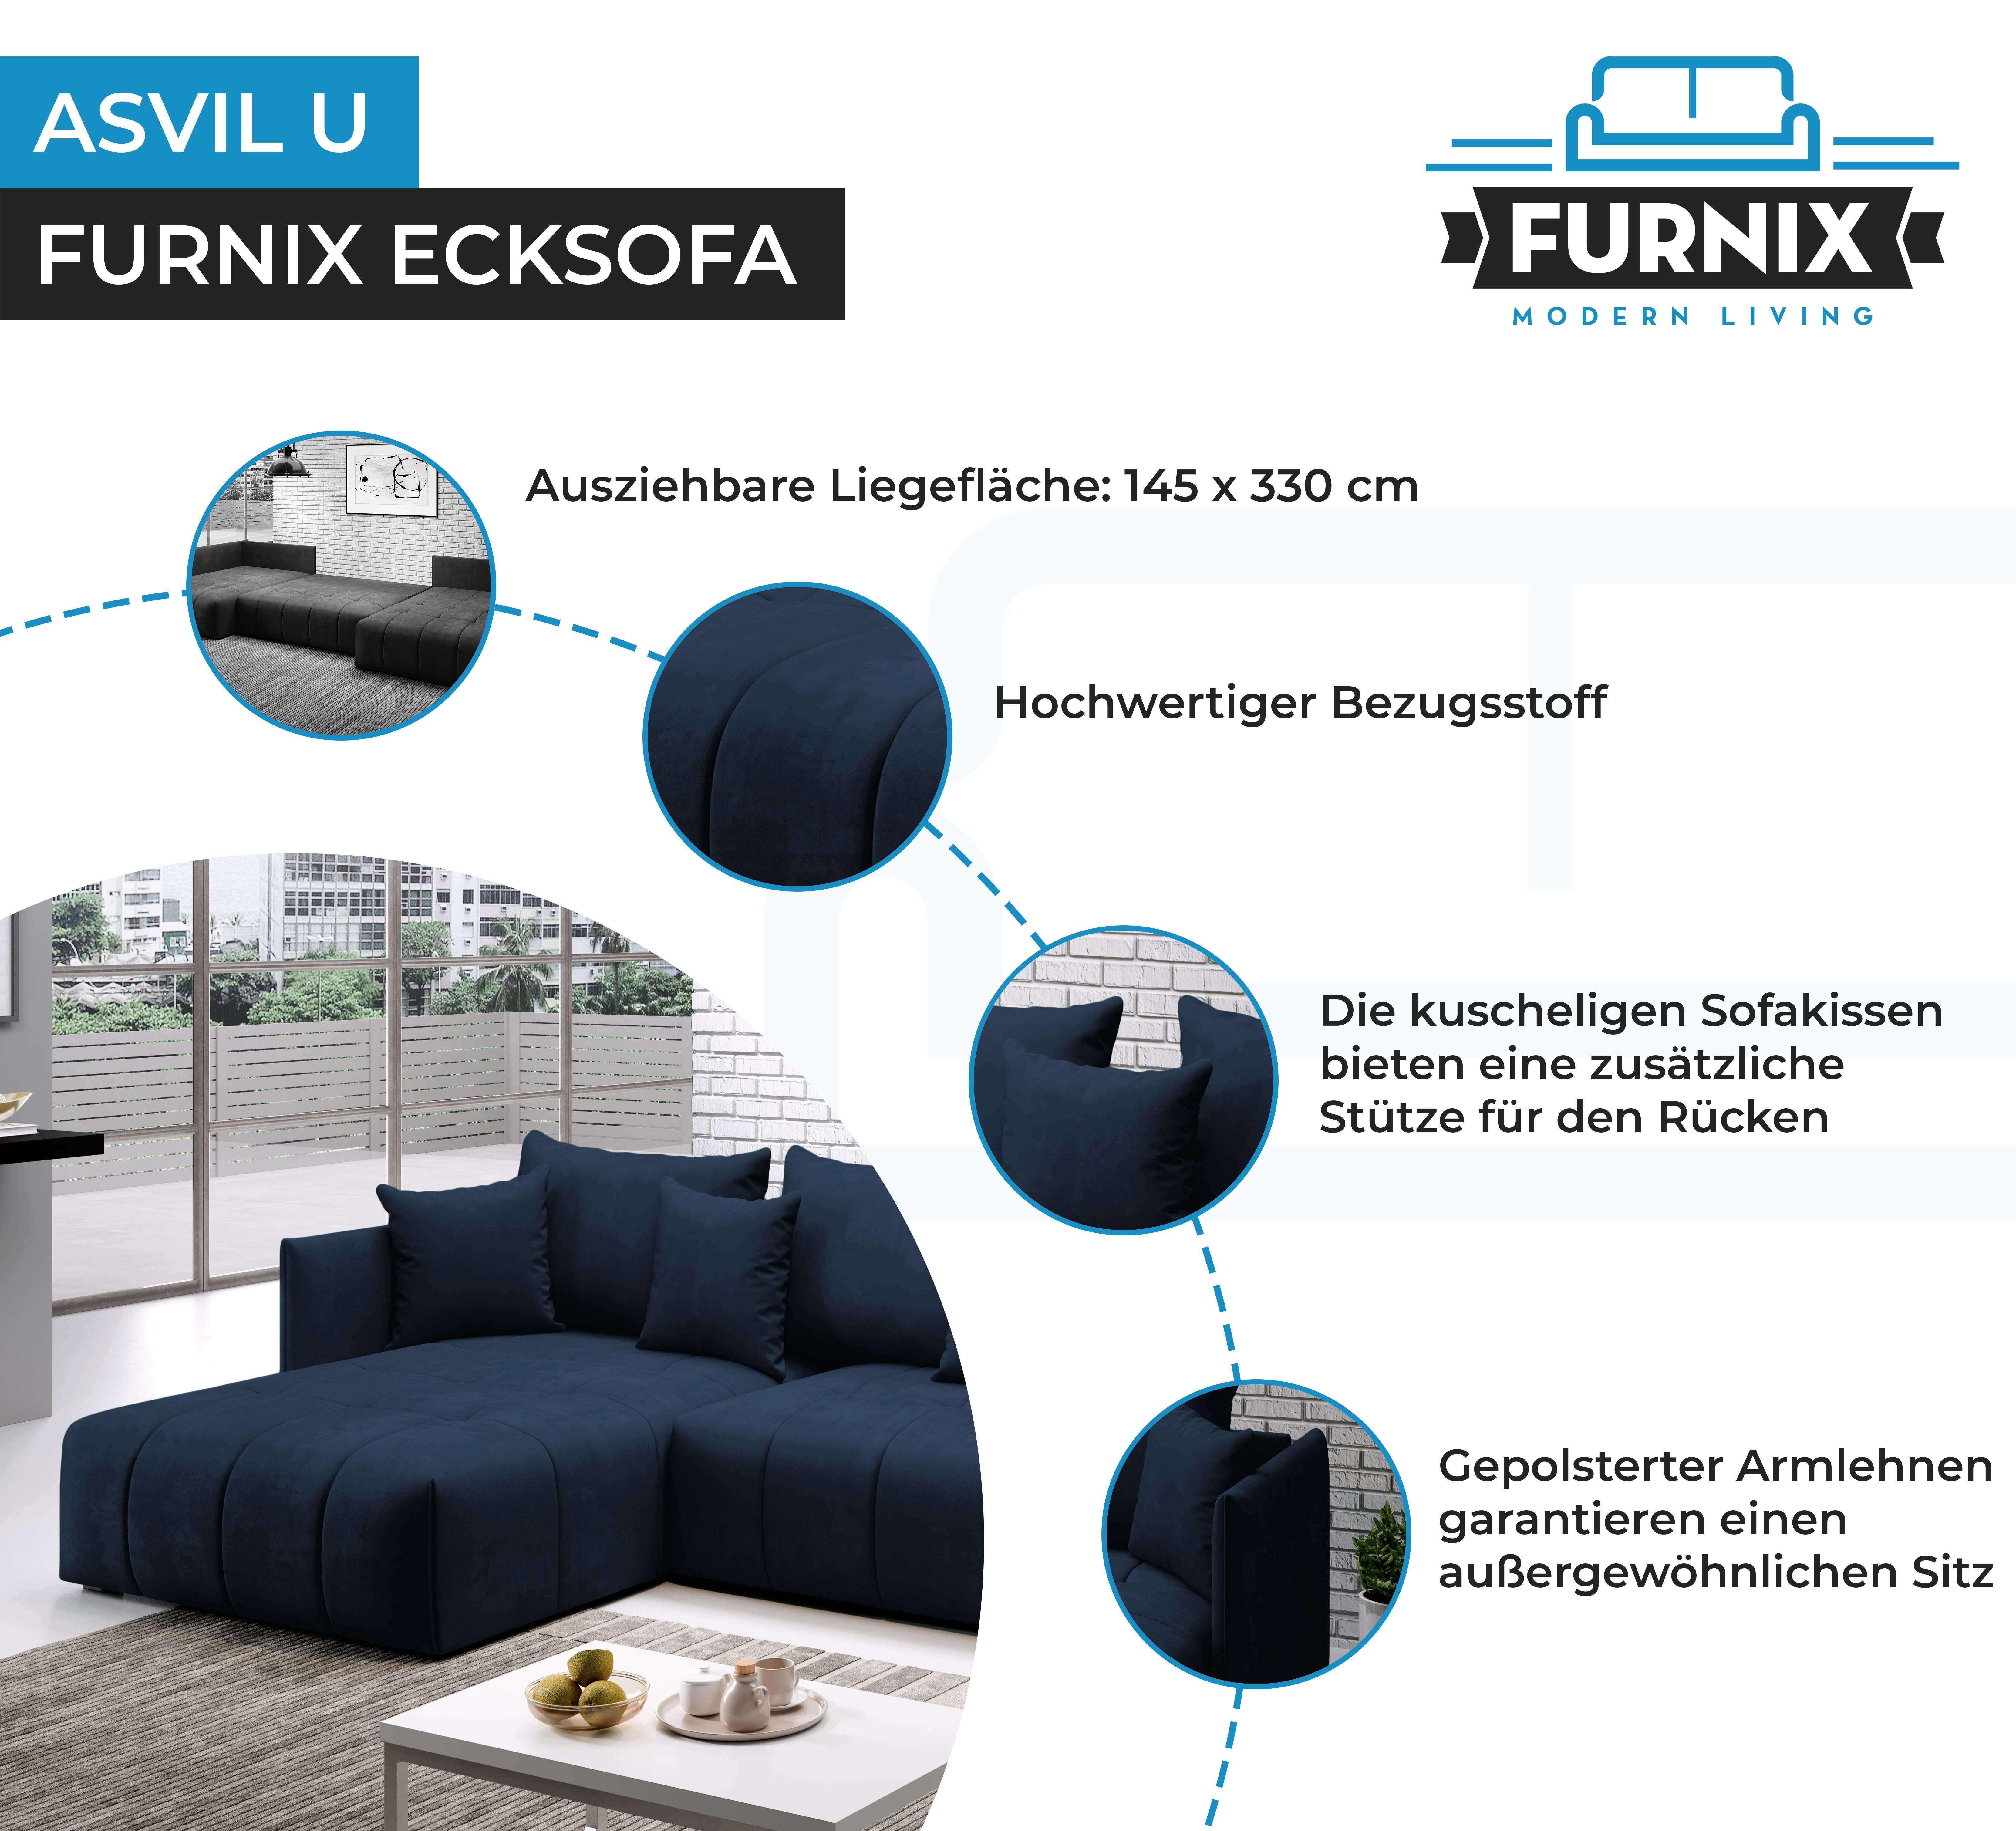 Bettkasten, Blau Schlaffunktion Furnix in Farbauswahl, mit Made T180 B353 U-Form-Sofa Ecksofa ASVIL Europe MH77 x und cm, H80 x